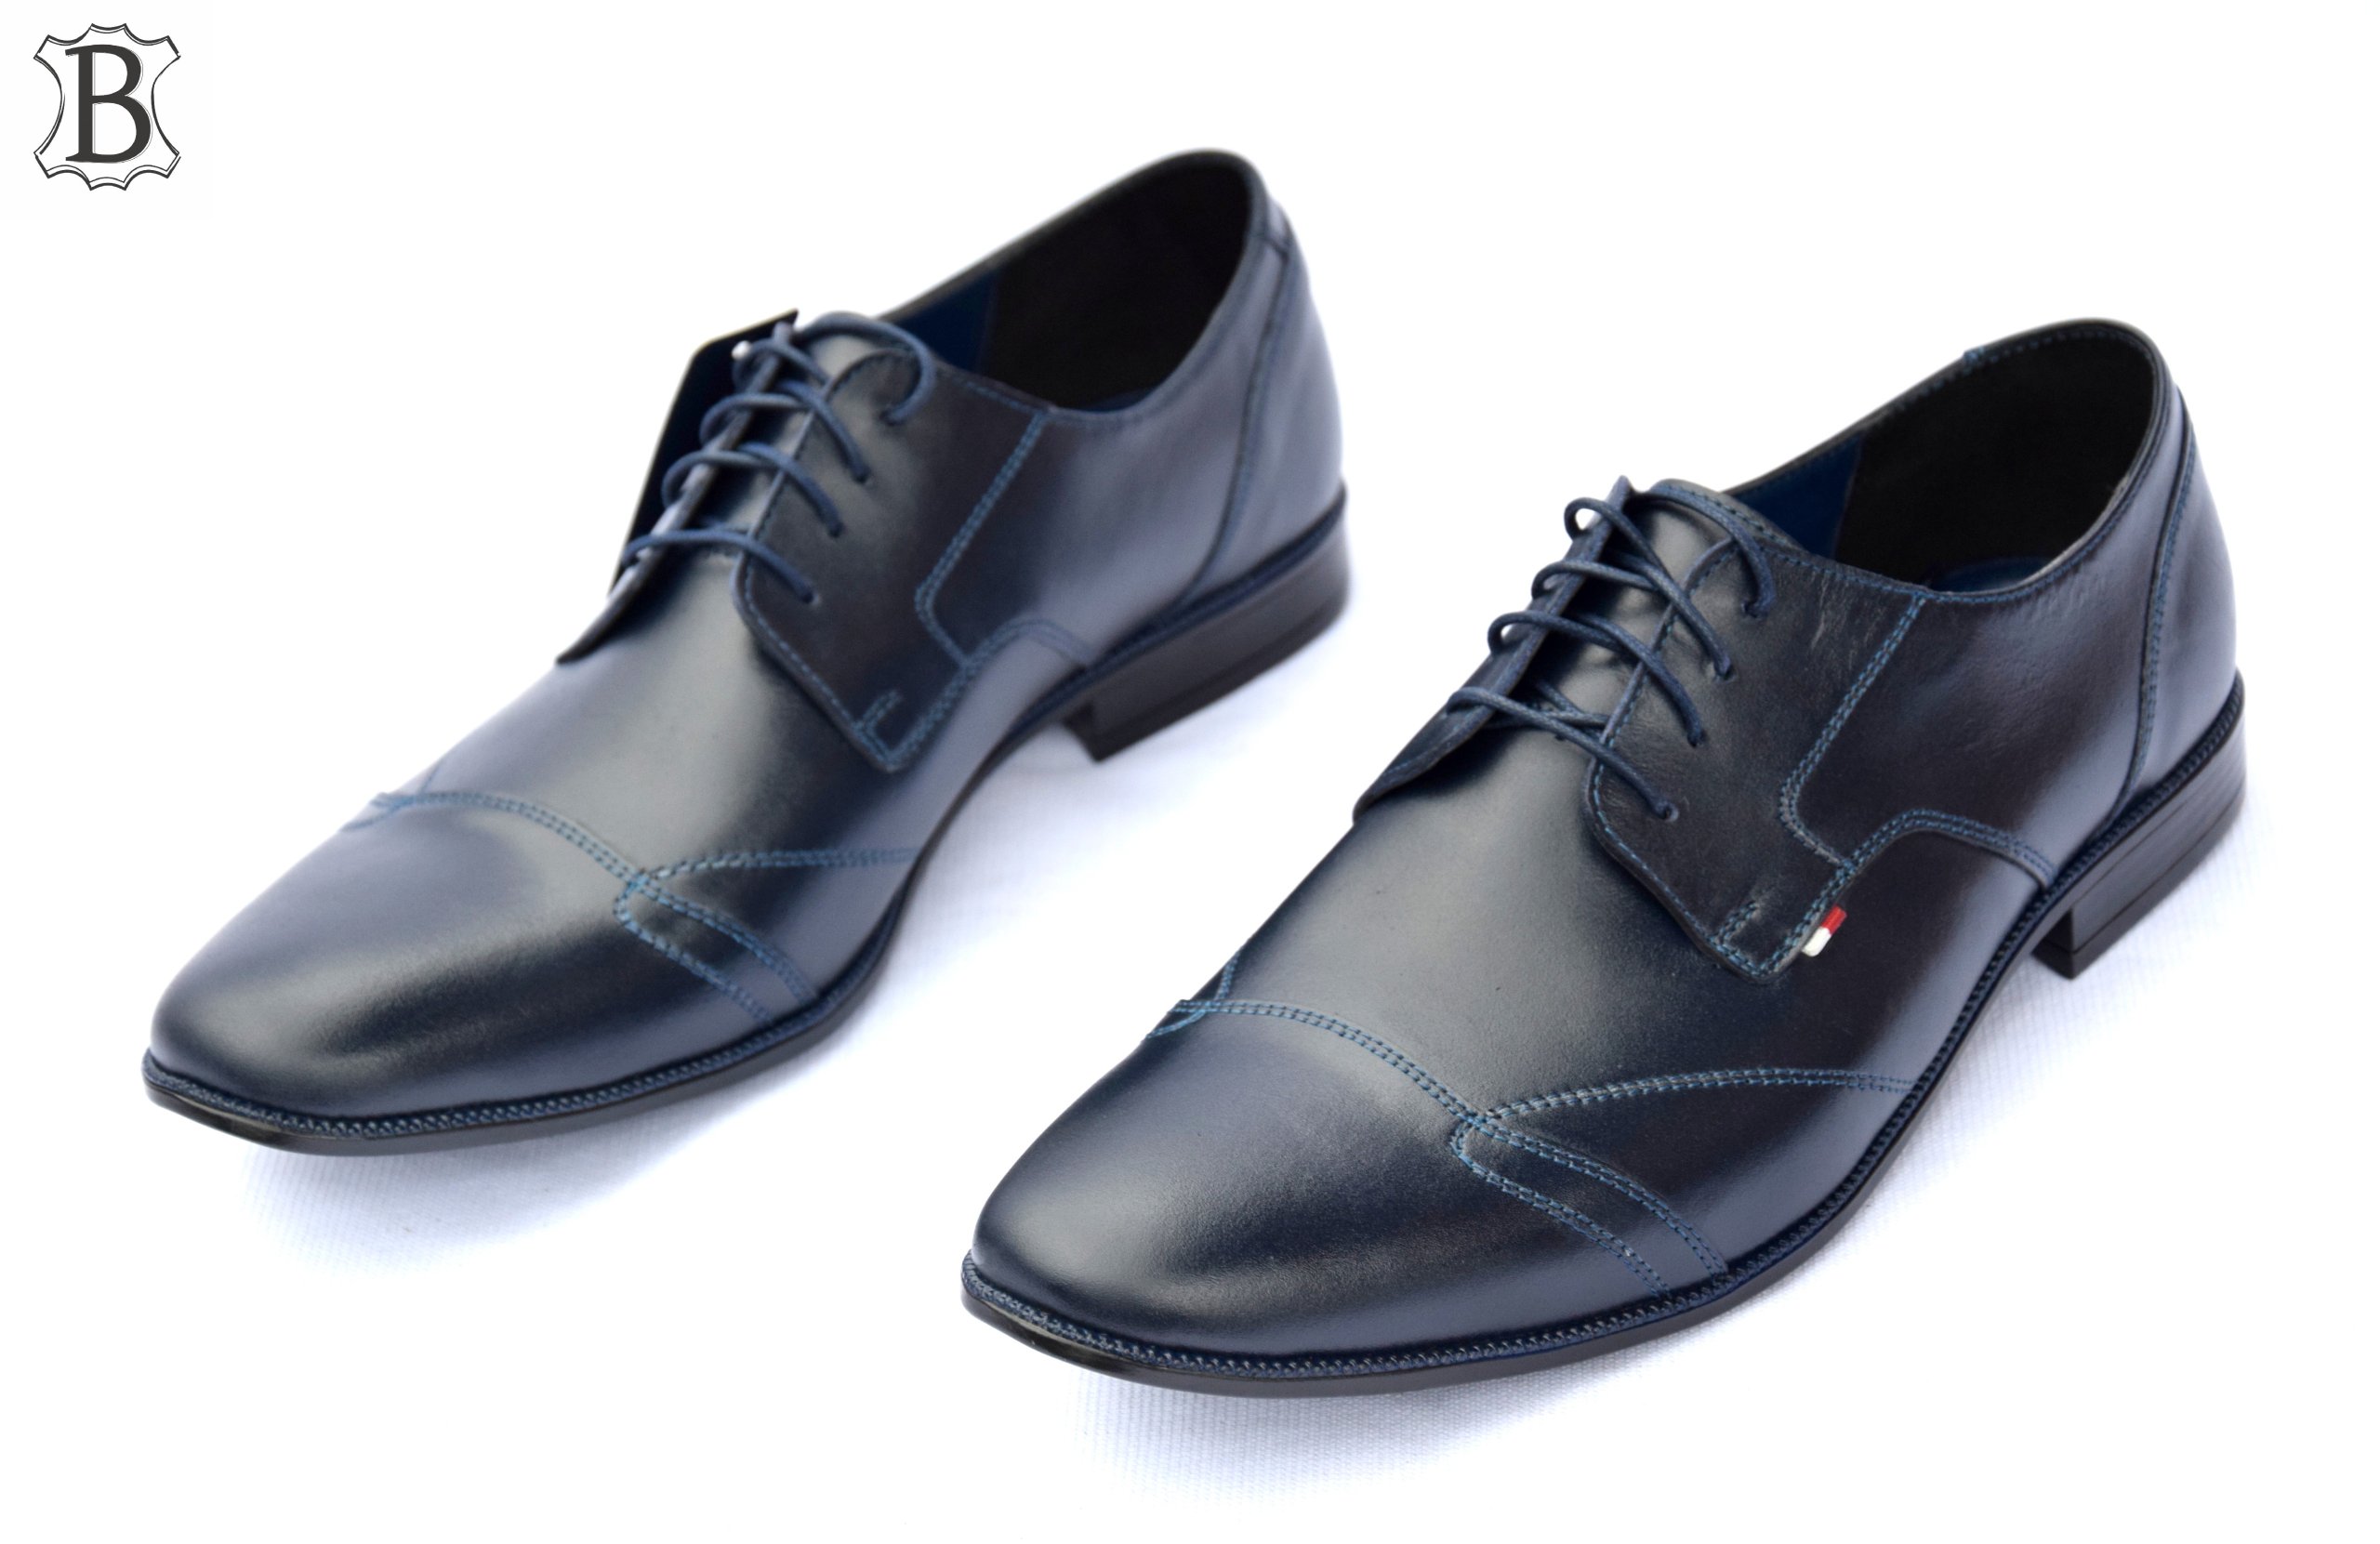 Обувь кожаная официальная польская модель 2018 270 г Цвет черный темно-синий